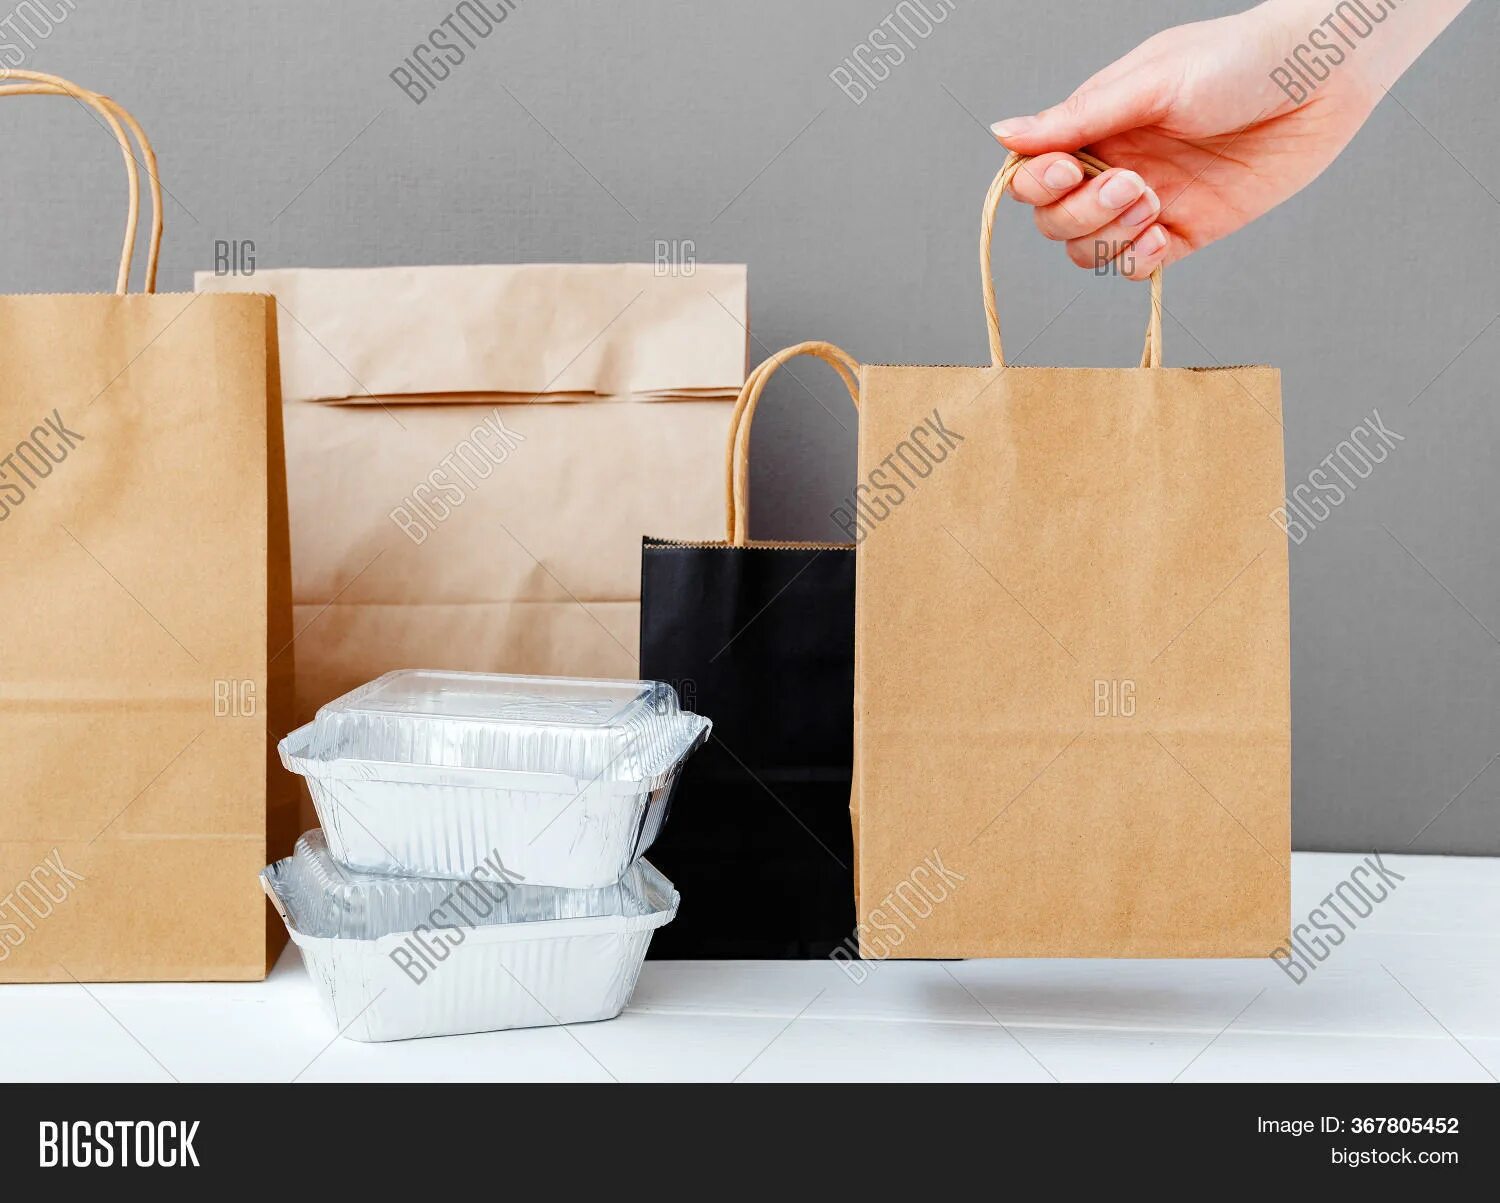 Доставку каждого отдельного пакета. Пакет с едой. Крафтовый пакет в руке. Крафтовый пакет с продуктами. Бумажный пакет с едой.